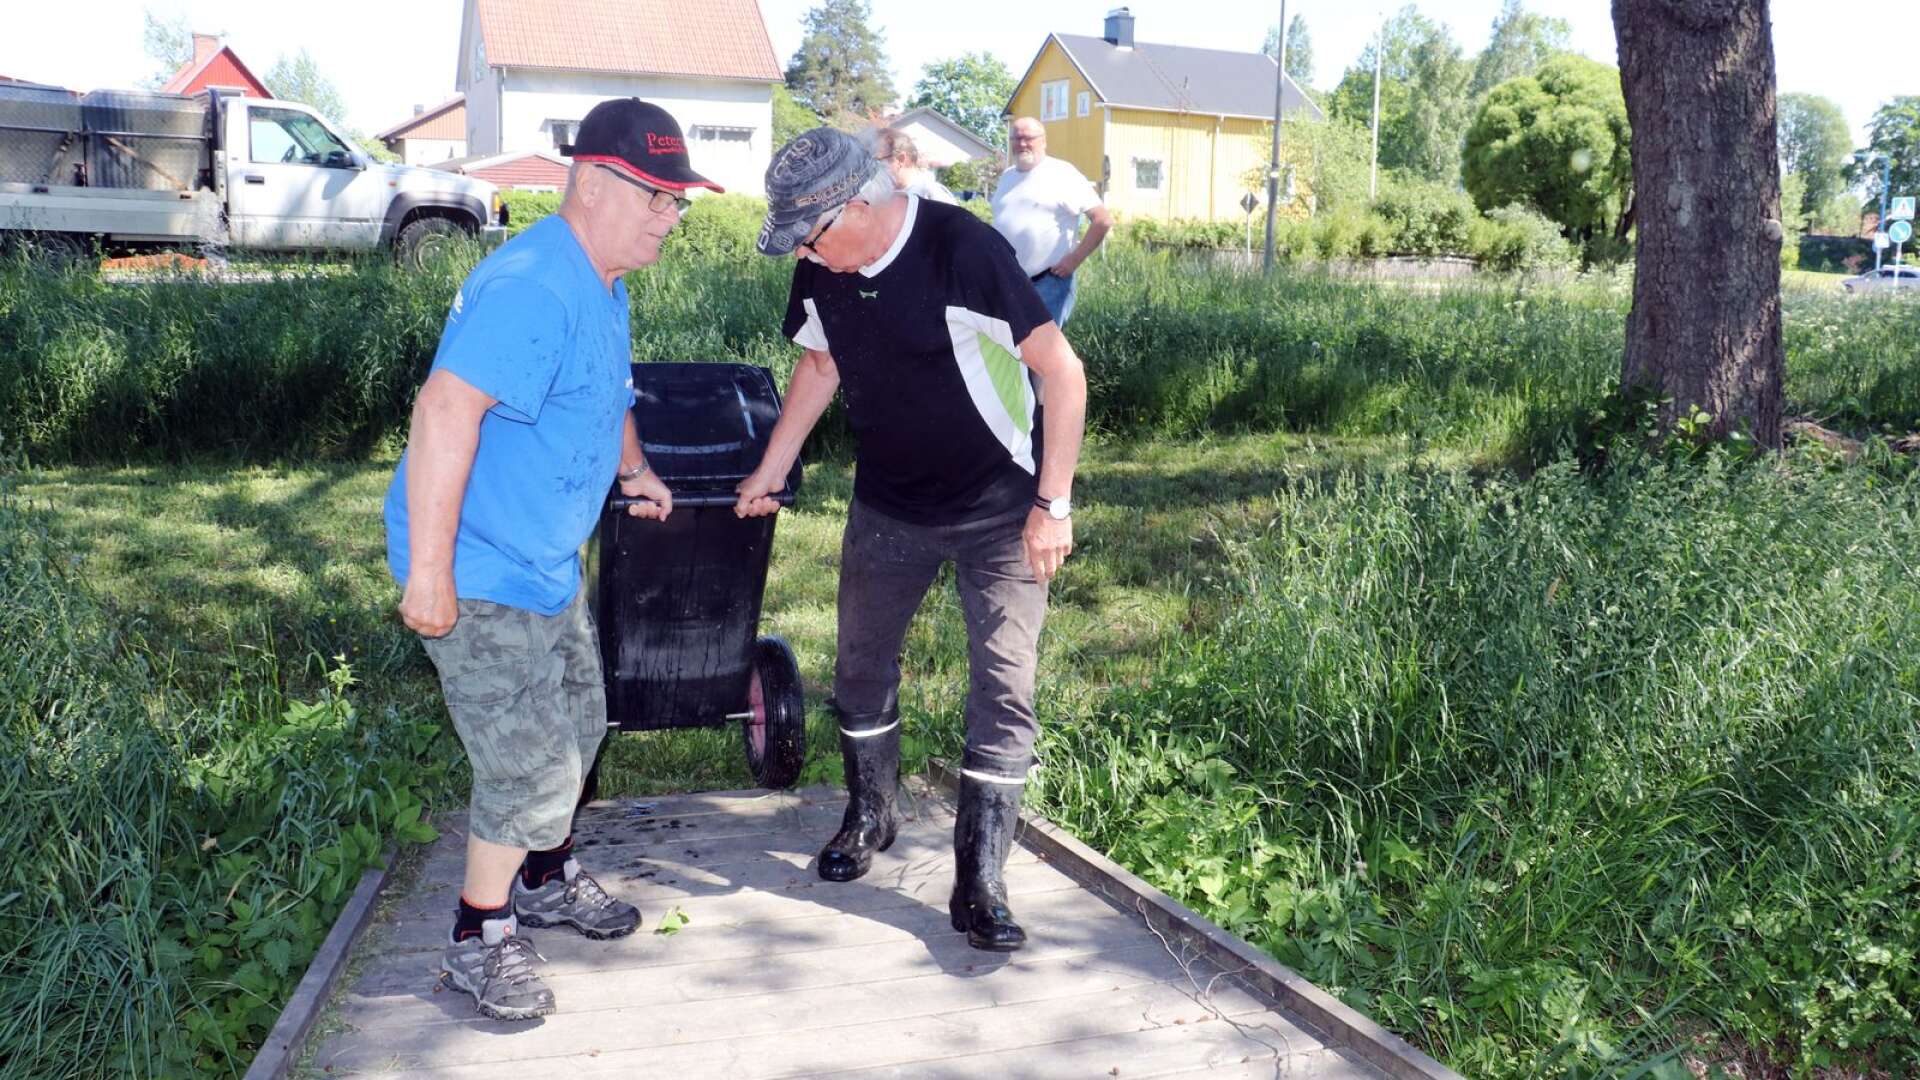 70 kilo regnbåge sattes ut i Skillerälven lagom till sommarlovet. Här ska kommunens alla barn i åldrarna 4-15 år kunna fiska gratis i sommar.